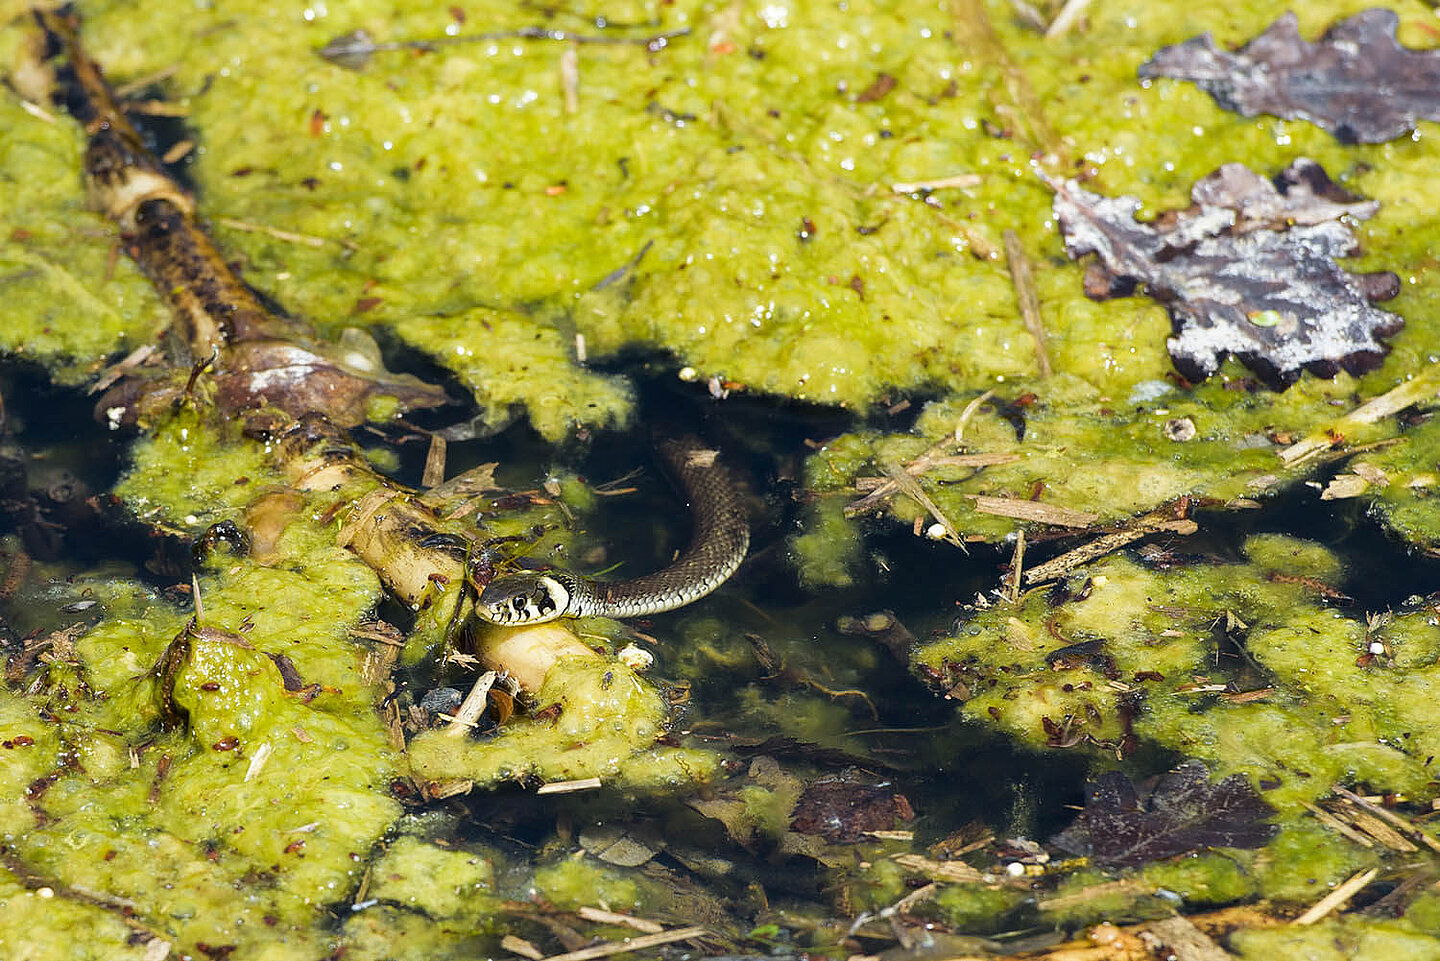 A Ringelnatter schlängelt sich unter den Algen über ein schwimmendes Stück Holz